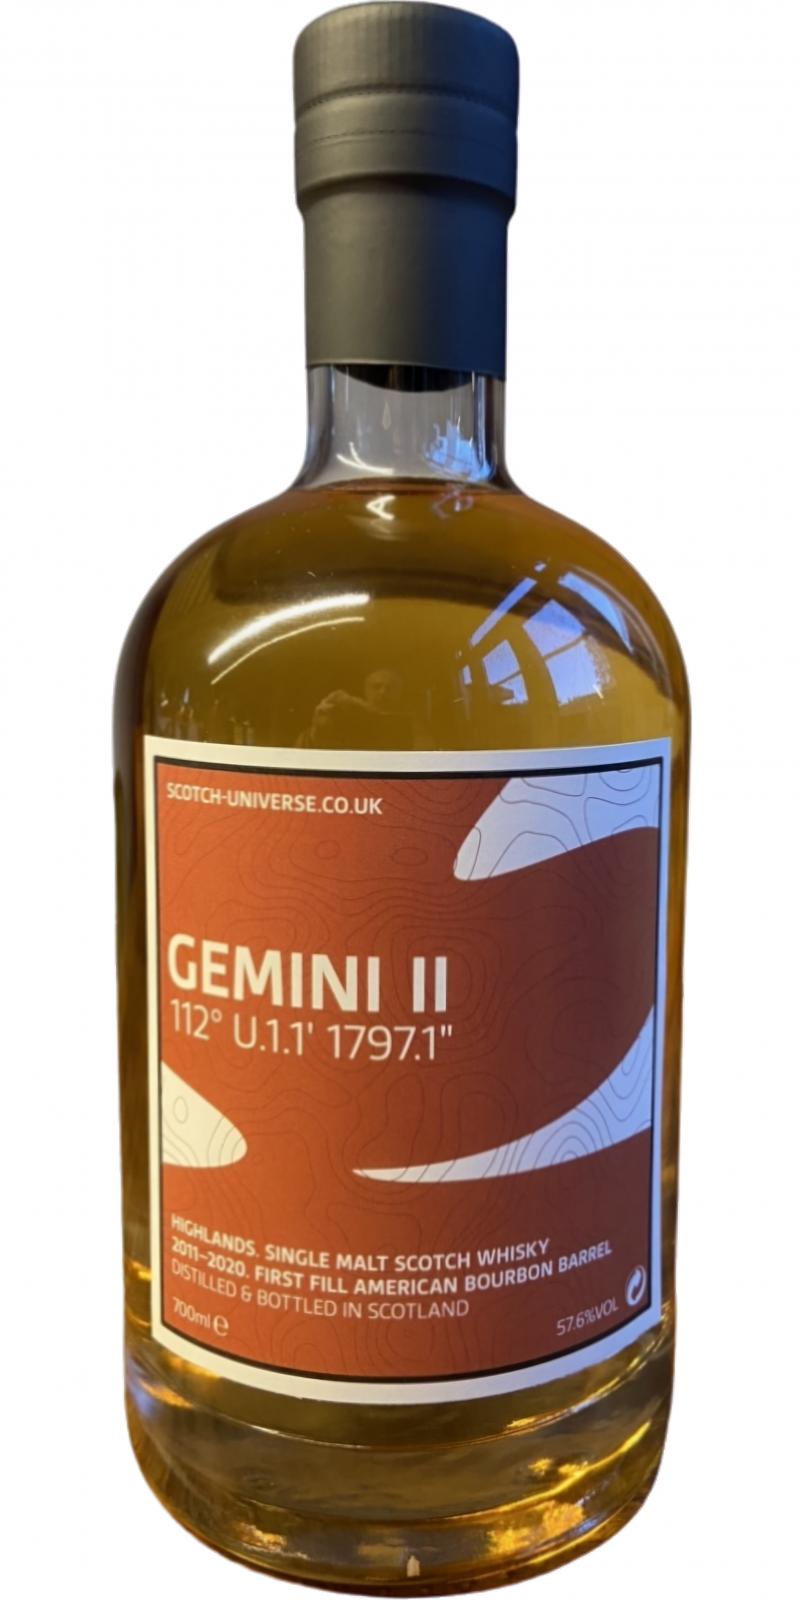 Scotch Universe Gemini II - 112° U.1.1' 1797.1''